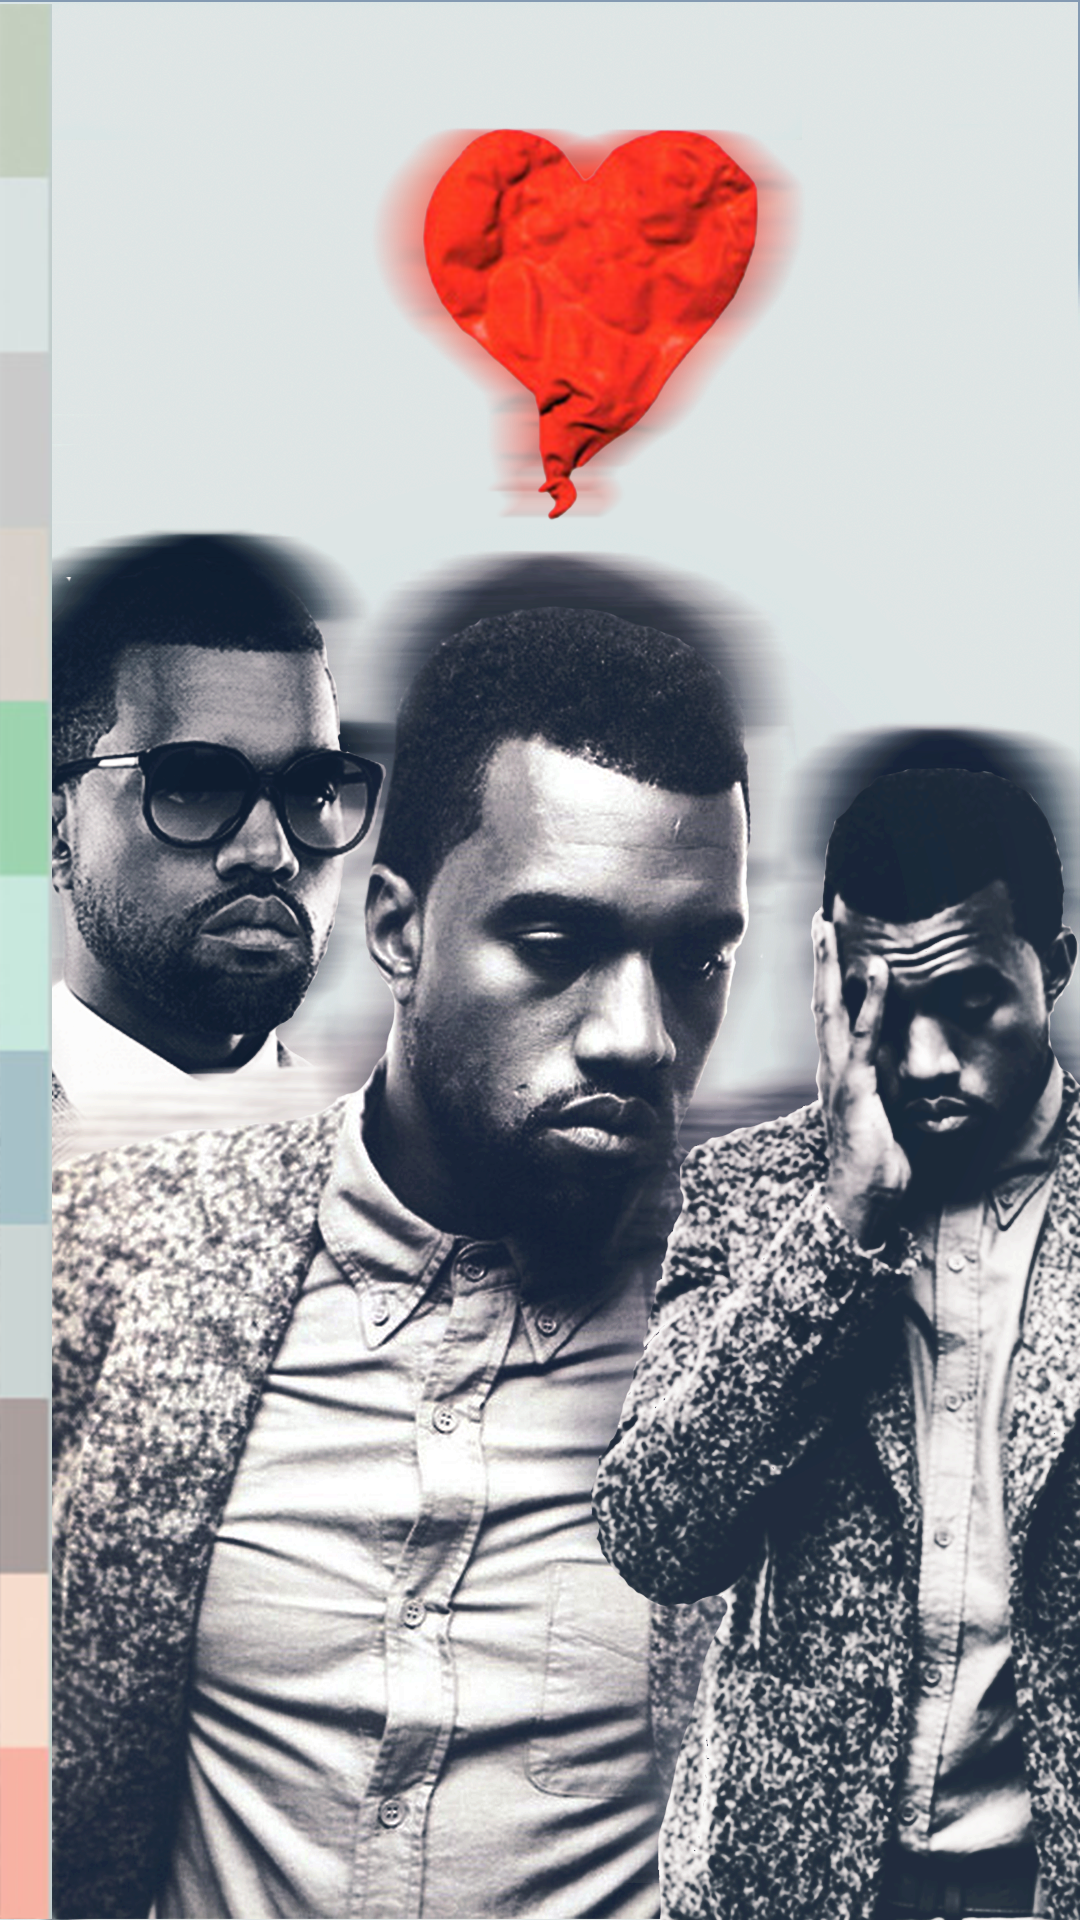 808s and Heartbreak Aesthetic Kanye West Wallpaper. Kanye west wallpaper, Kanye west, Kanye west photo